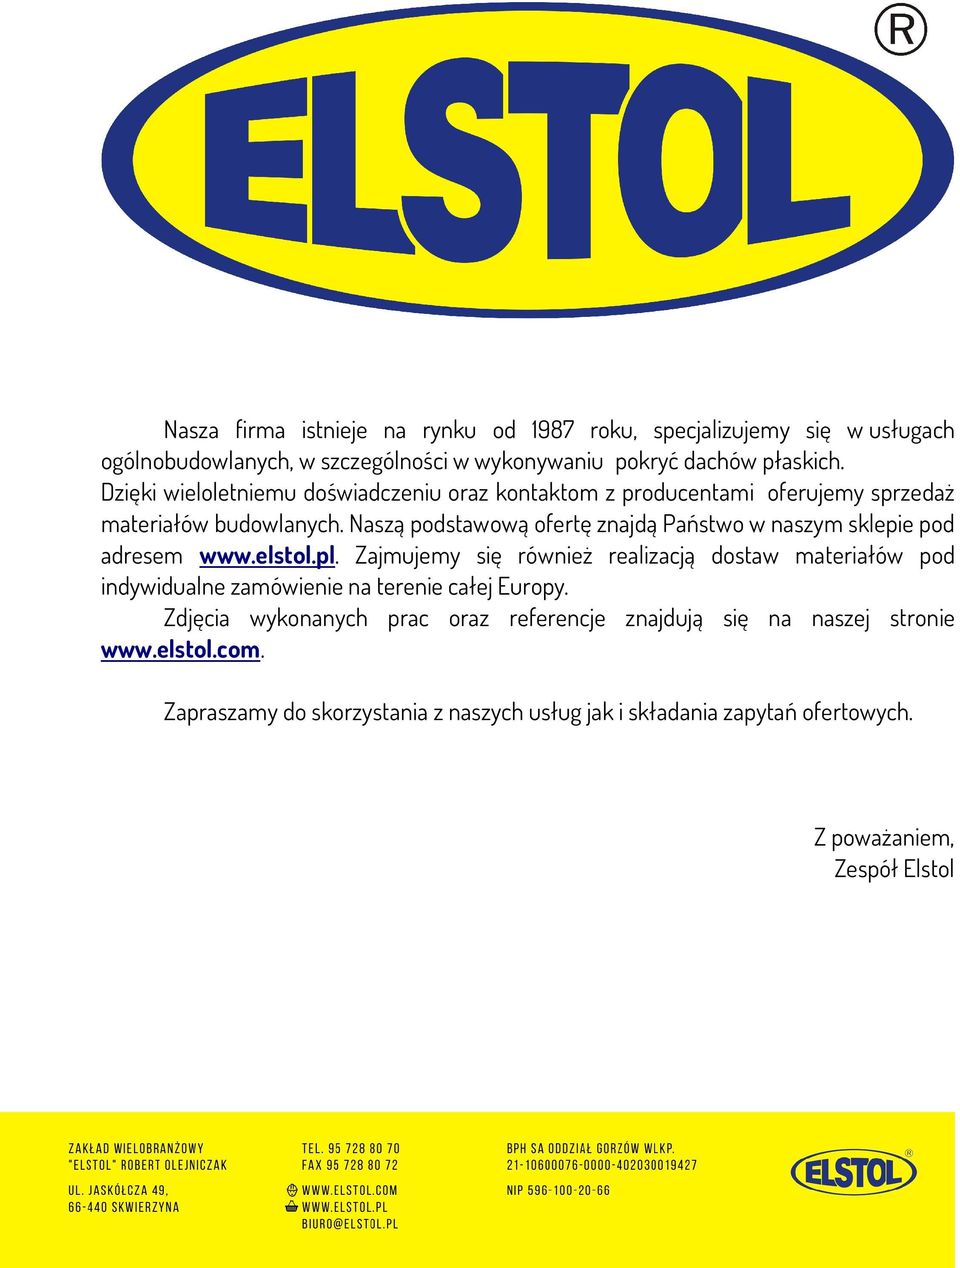 Naszą podstawową ofertę znajdą Państwo w naszym sklepie pod adresem www.elstol.pl.